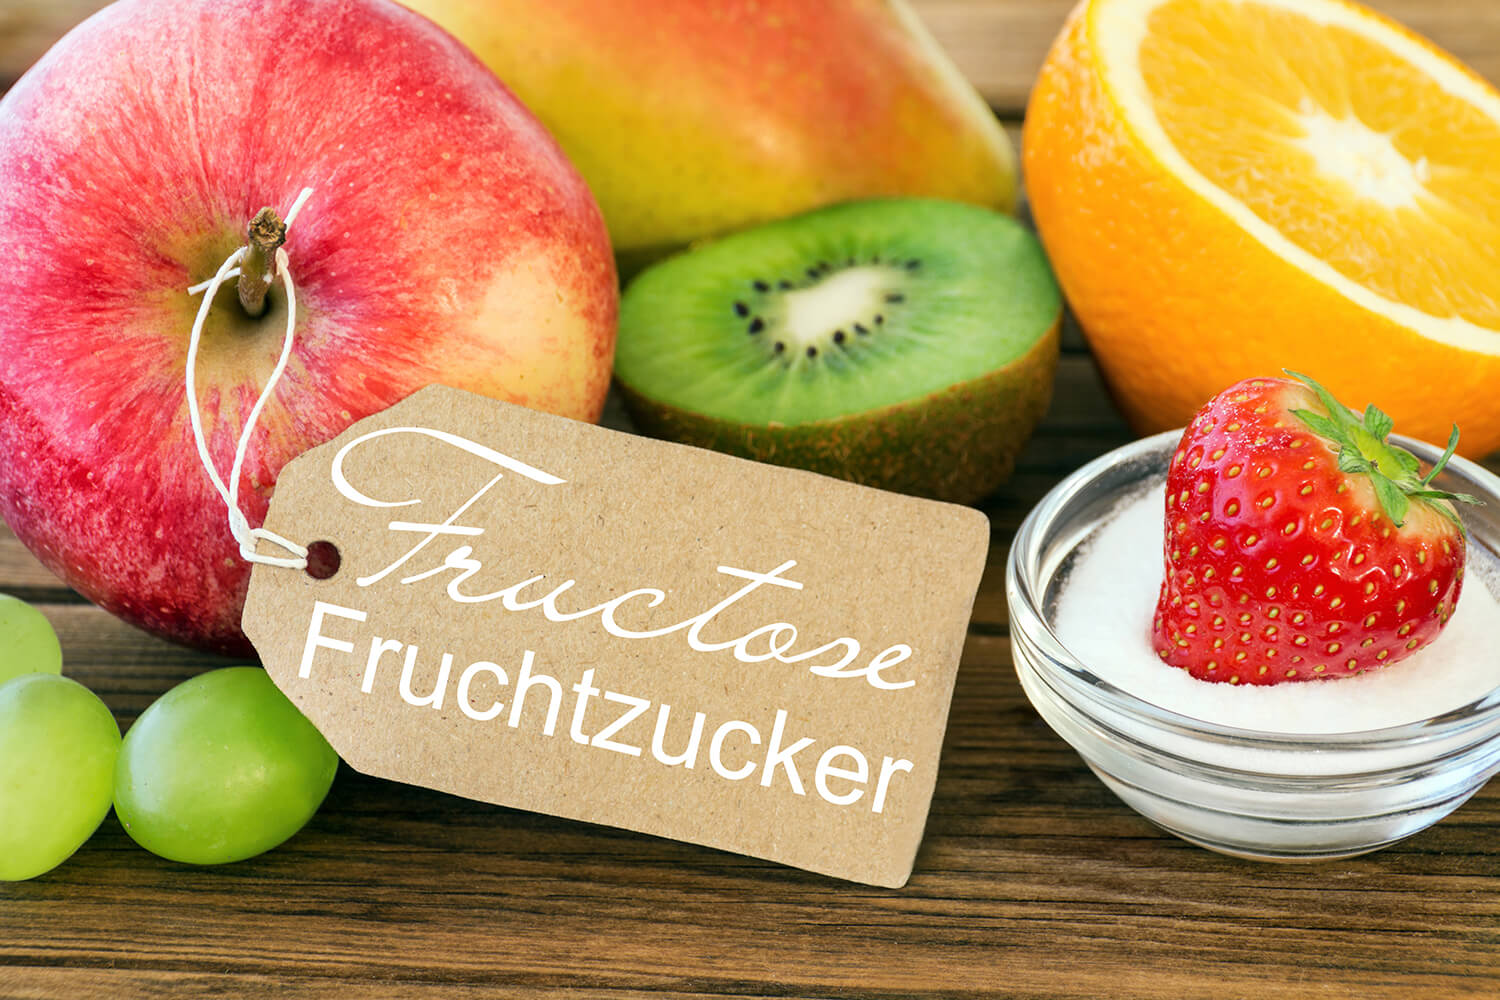 Verschiedenes Obst, ein Apfel trägt ein Schild mit Aufschrift "Fructose"